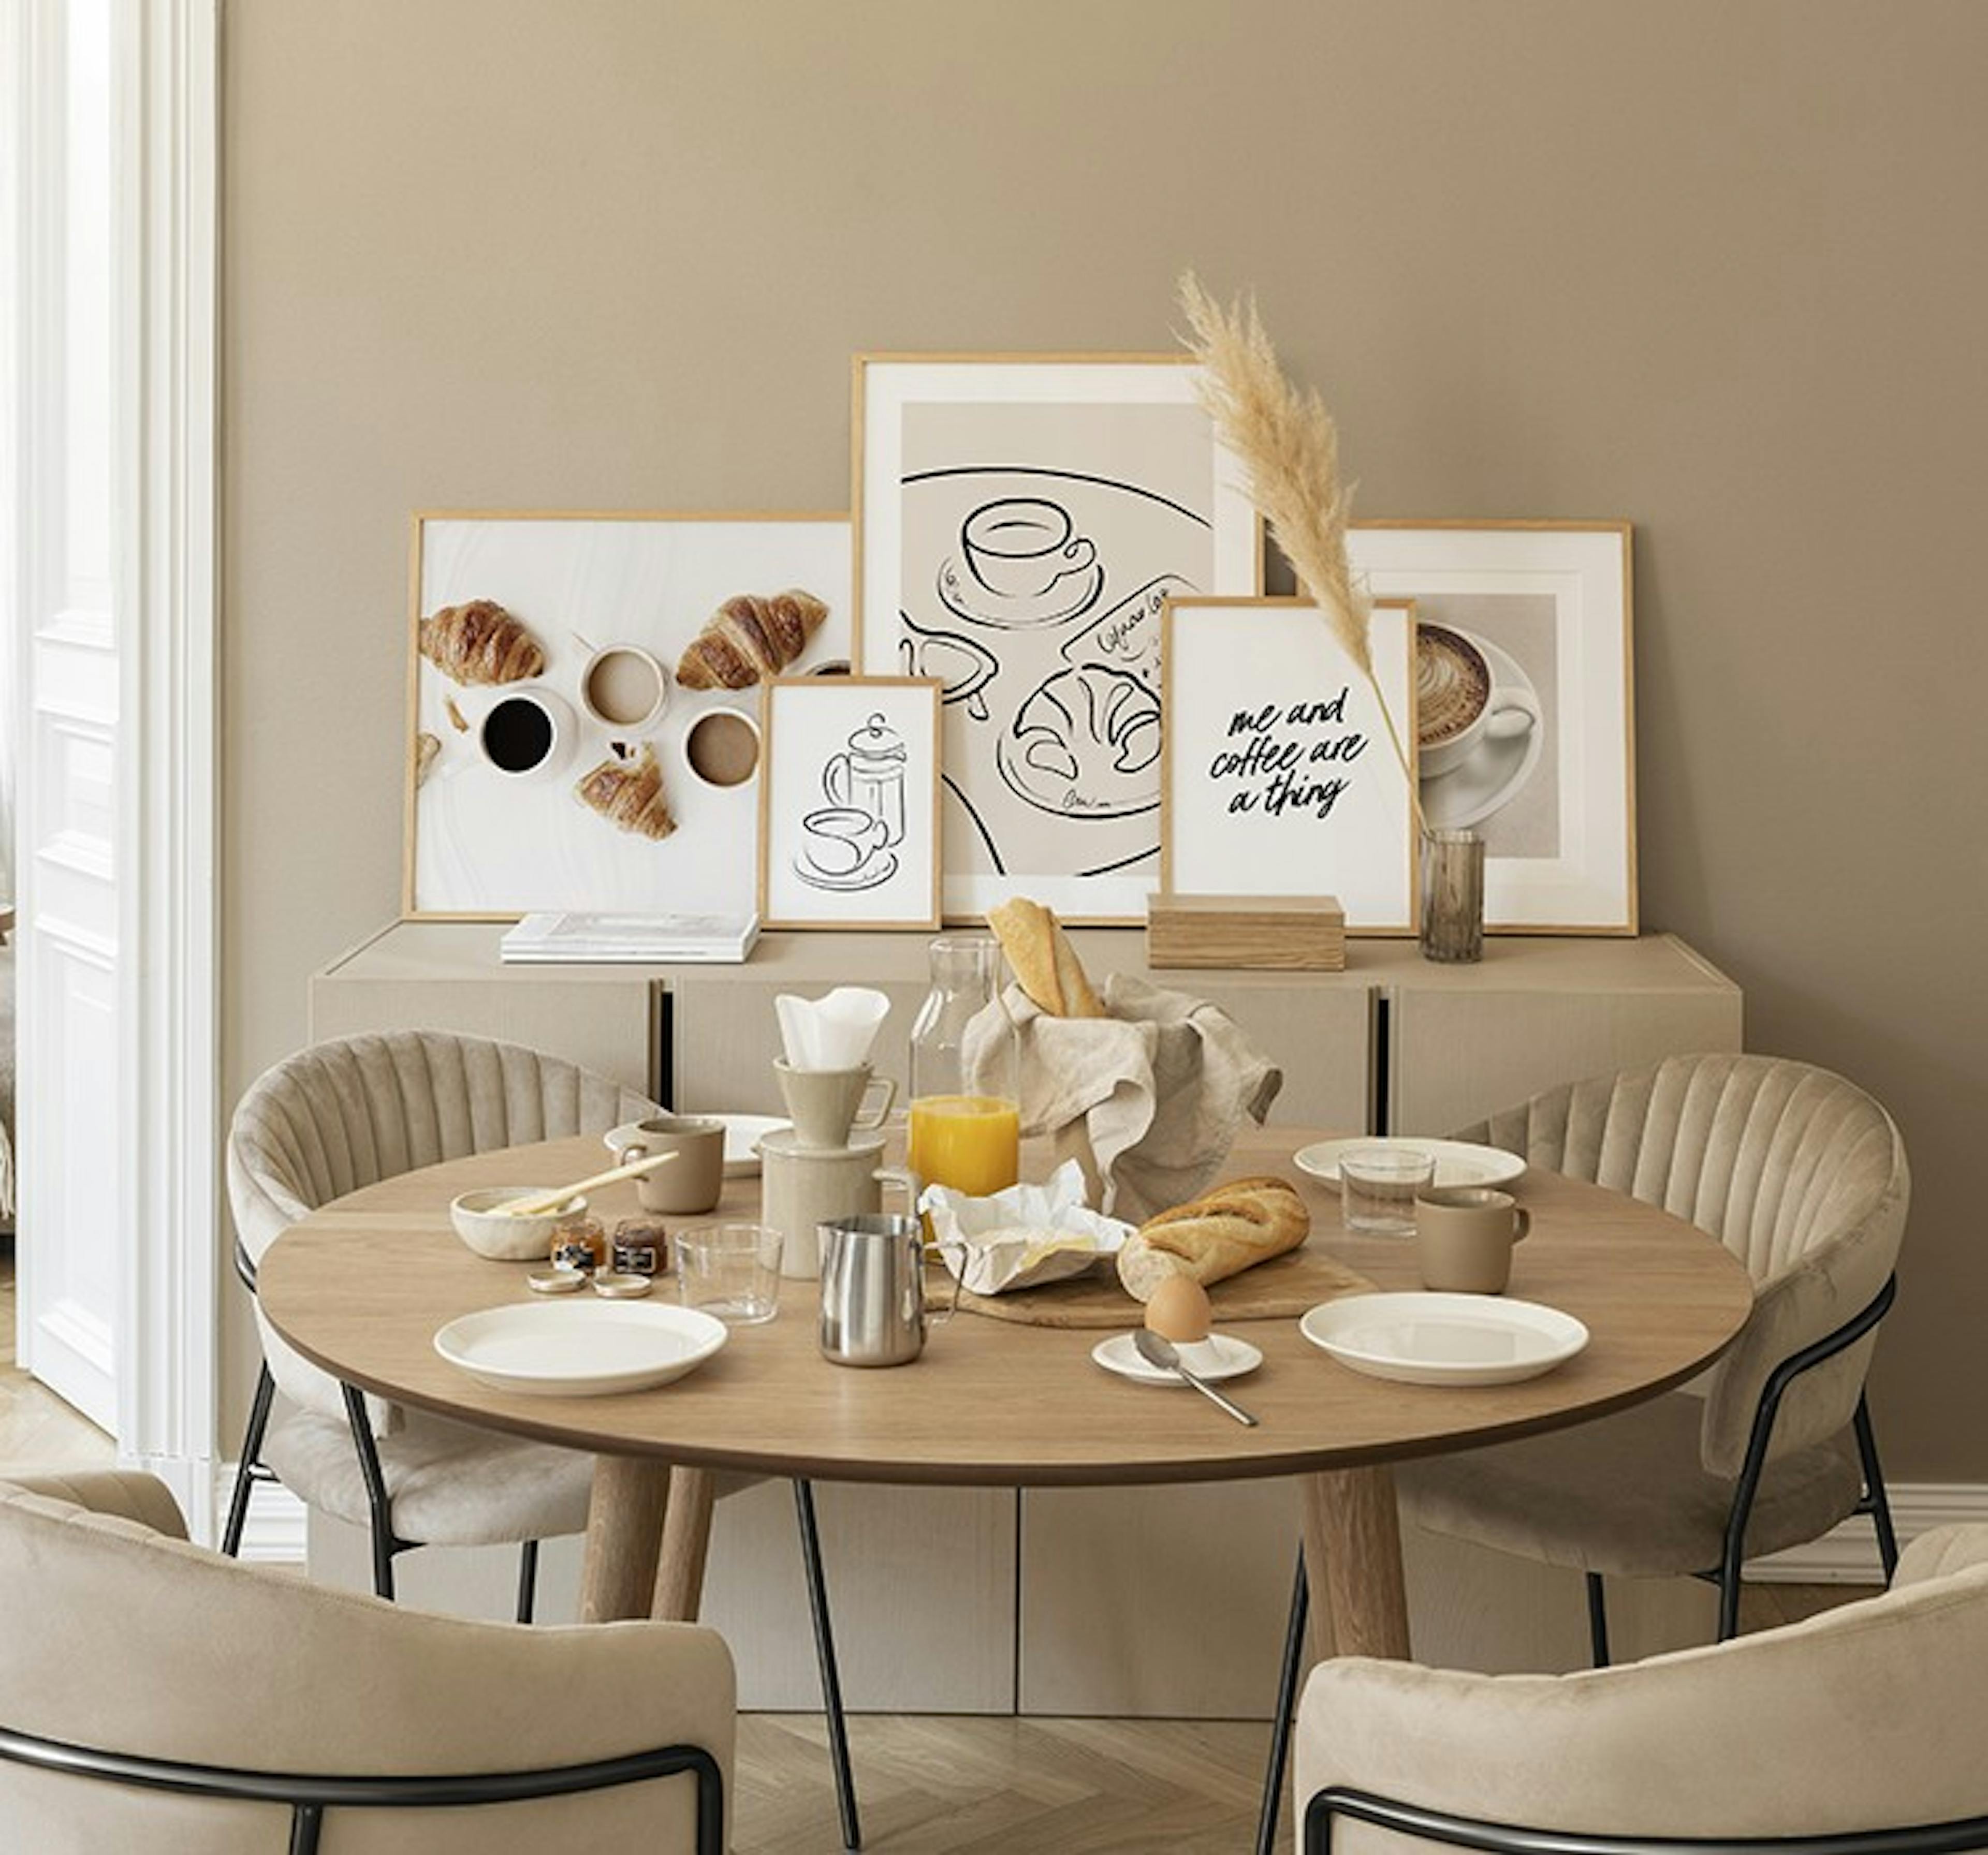 معرض لوحات وصور للمطبخ يحتوي على لوحات فنية جدارية عن القهوة باللون البني والبيج ومُحاط بإطارات من خشب البلوط مناسب للمطبخ